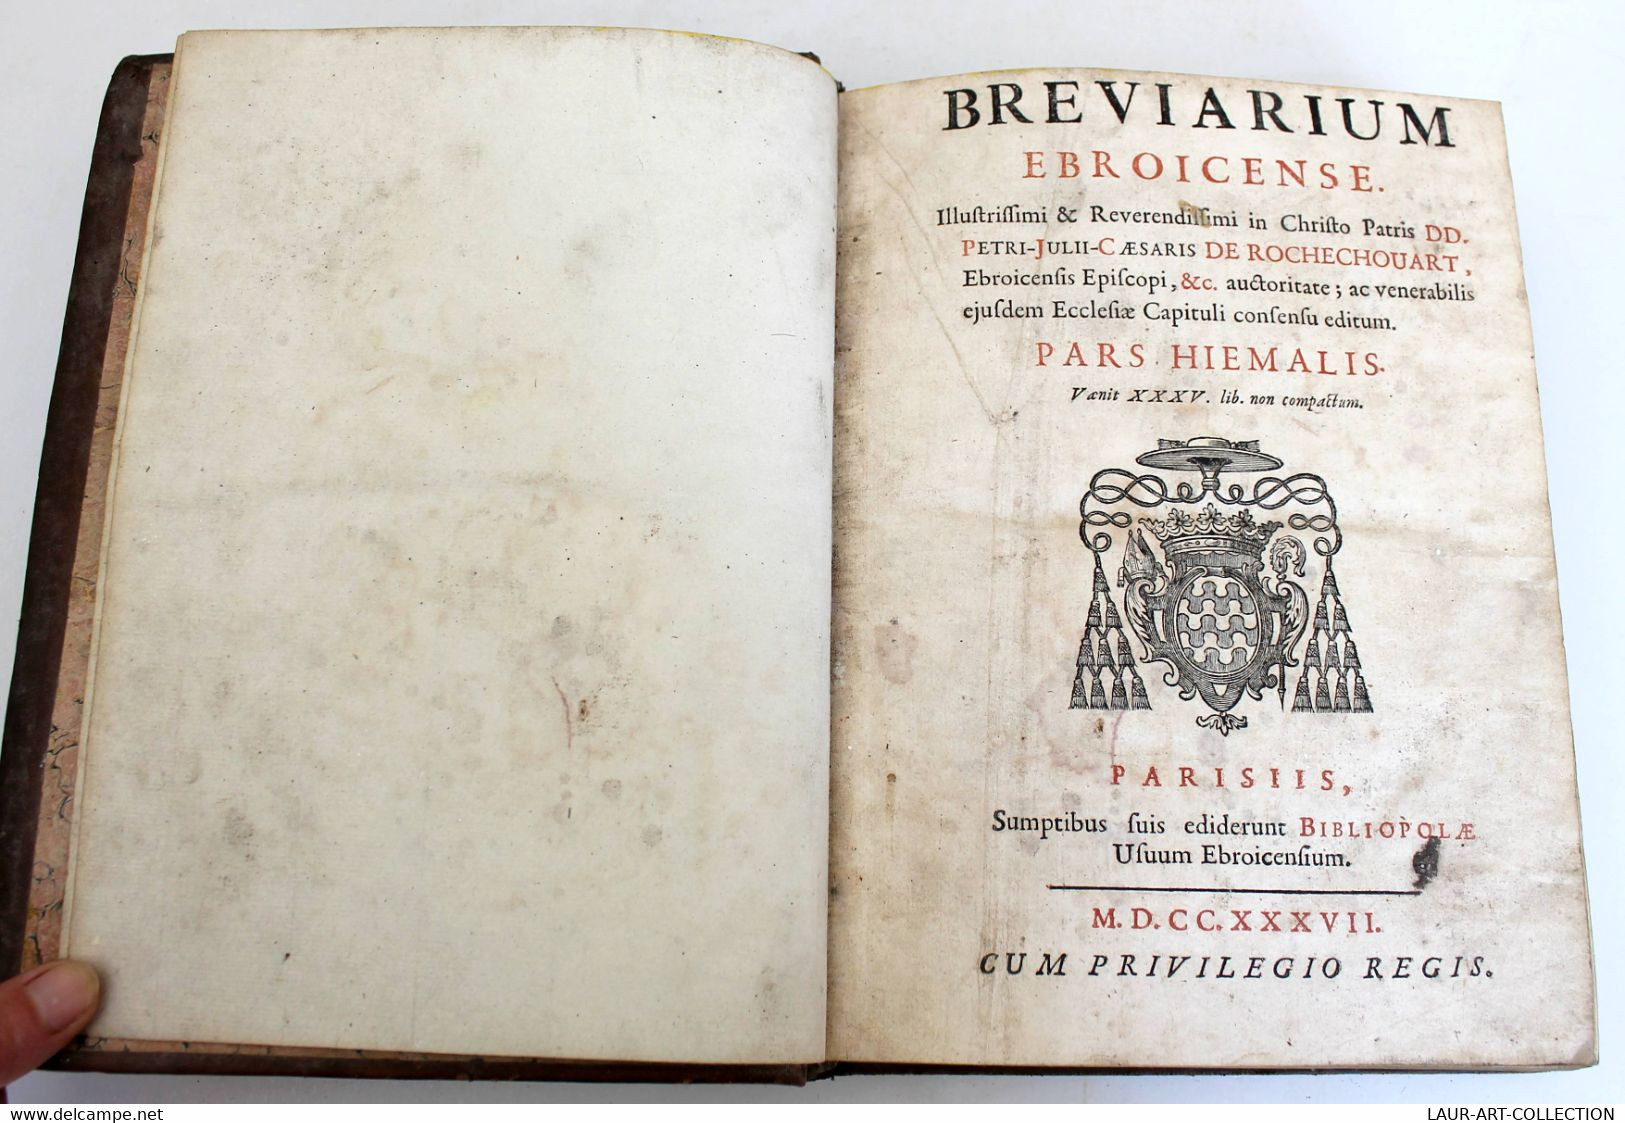 BREVIARUM EBROICENSE. PARS HIEMALIS 1737 - ROCHECHOUART - LIVRE RELIGIEUX MISSEL, ANCIEN DE COLLECTION  (3006.5) - Livres Anciens